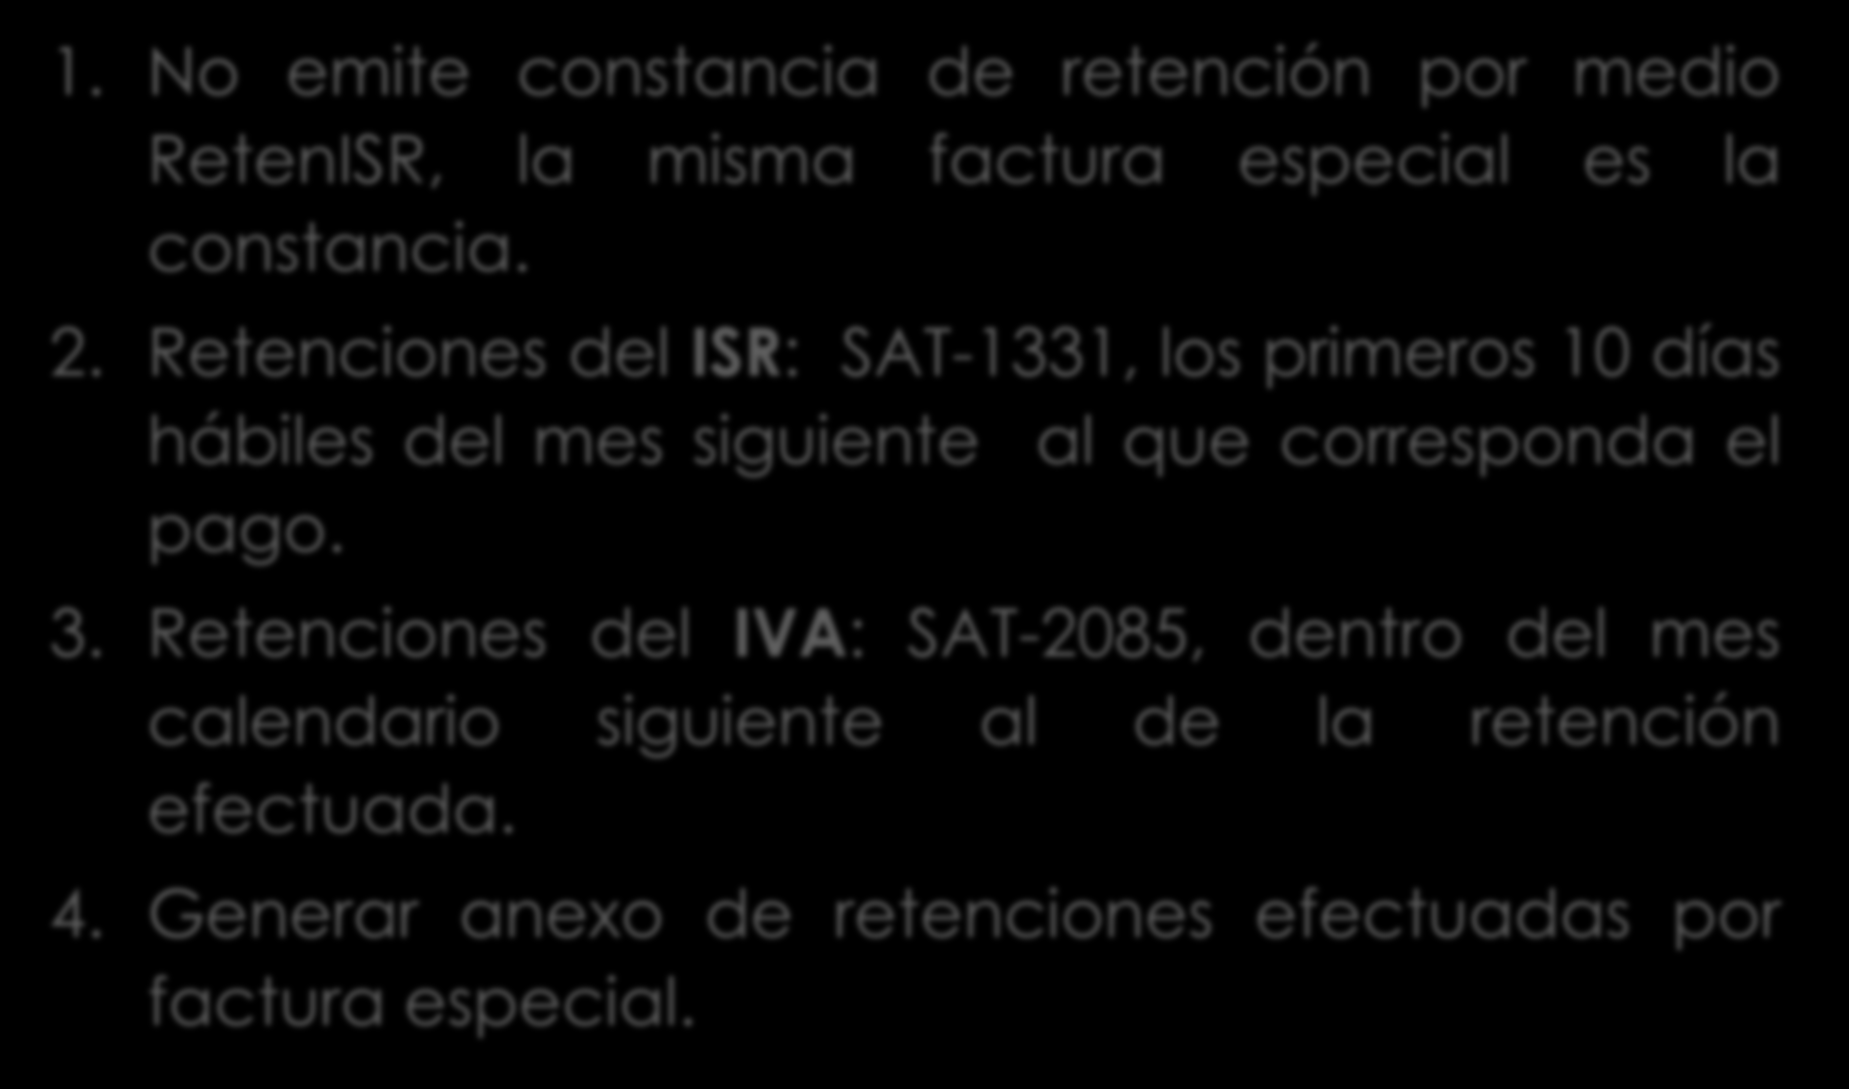 Continua resolución retención sobre factura especial. 1. No emite constancia de retención por medio RetenISR, la misma factura especial es la constancia. 2.